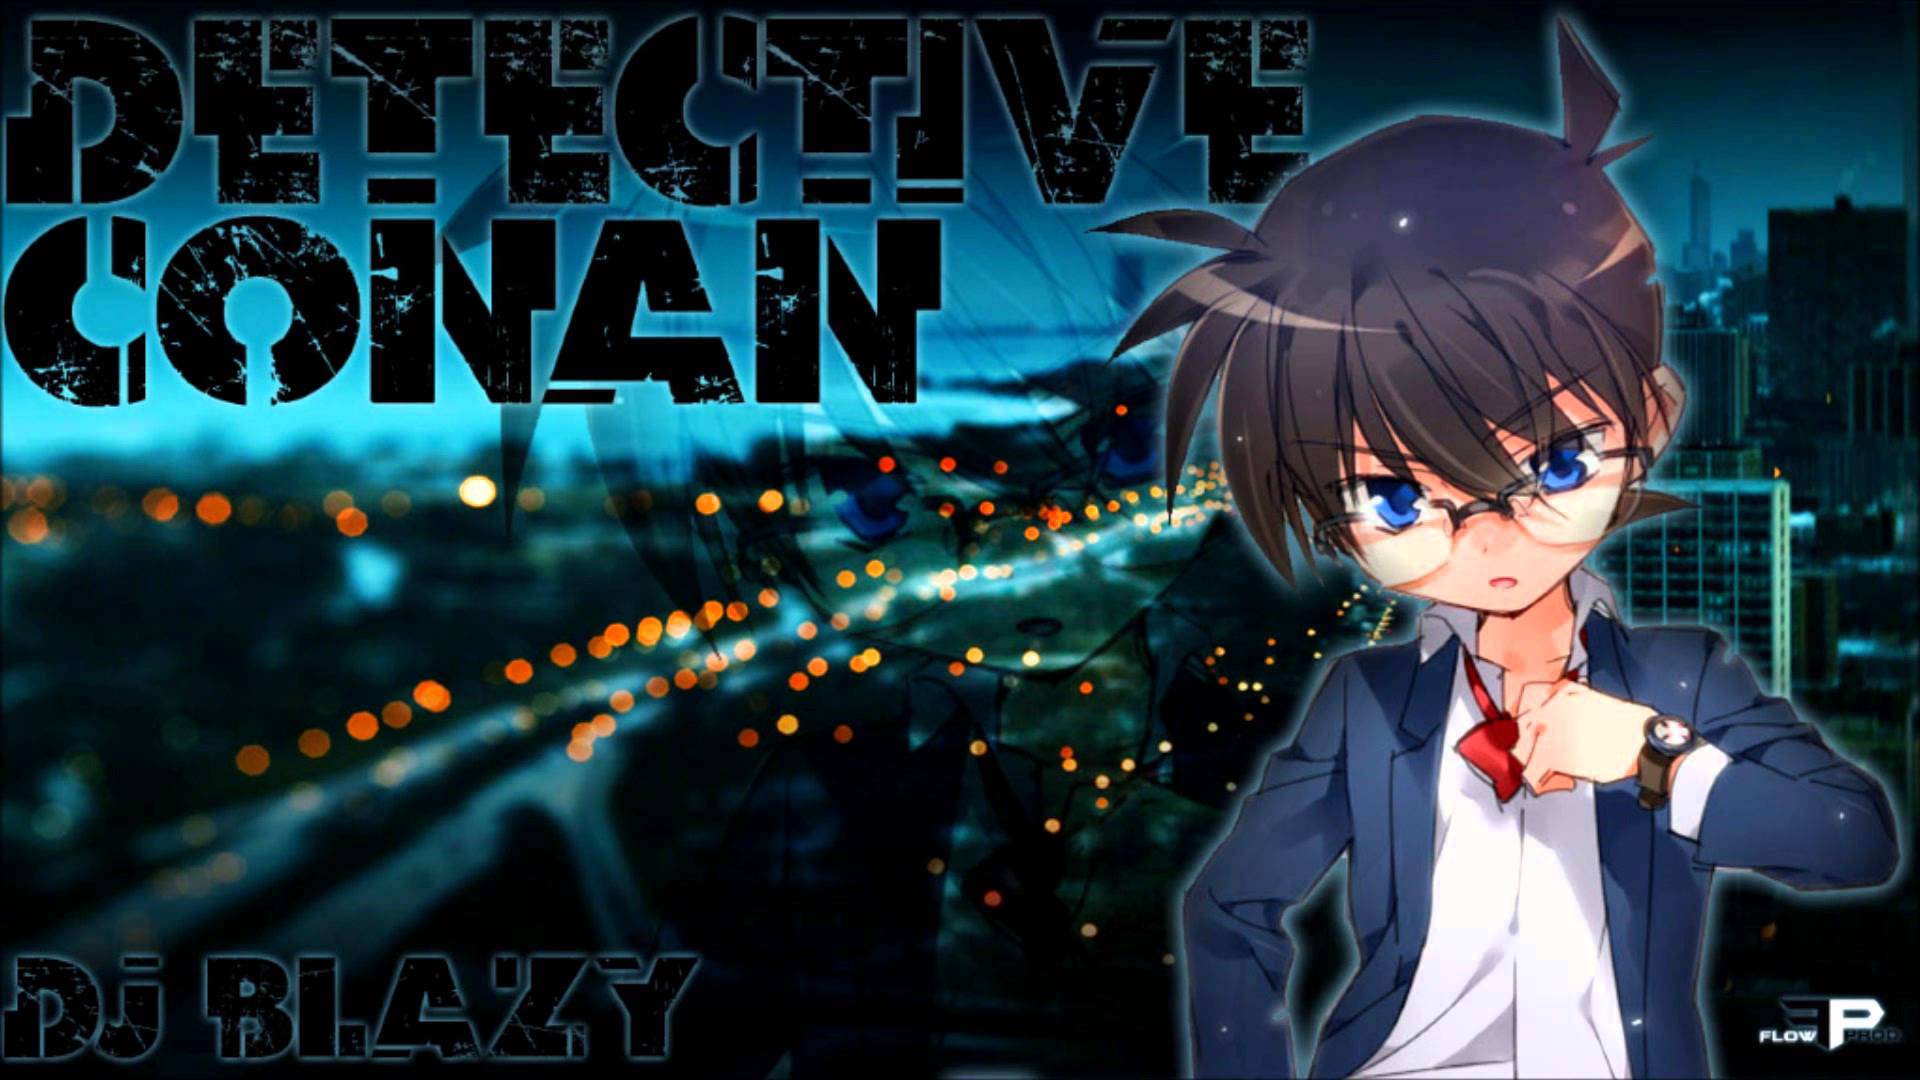 Detective Conan Backgrounds Free Download | PixelsTalk.Net